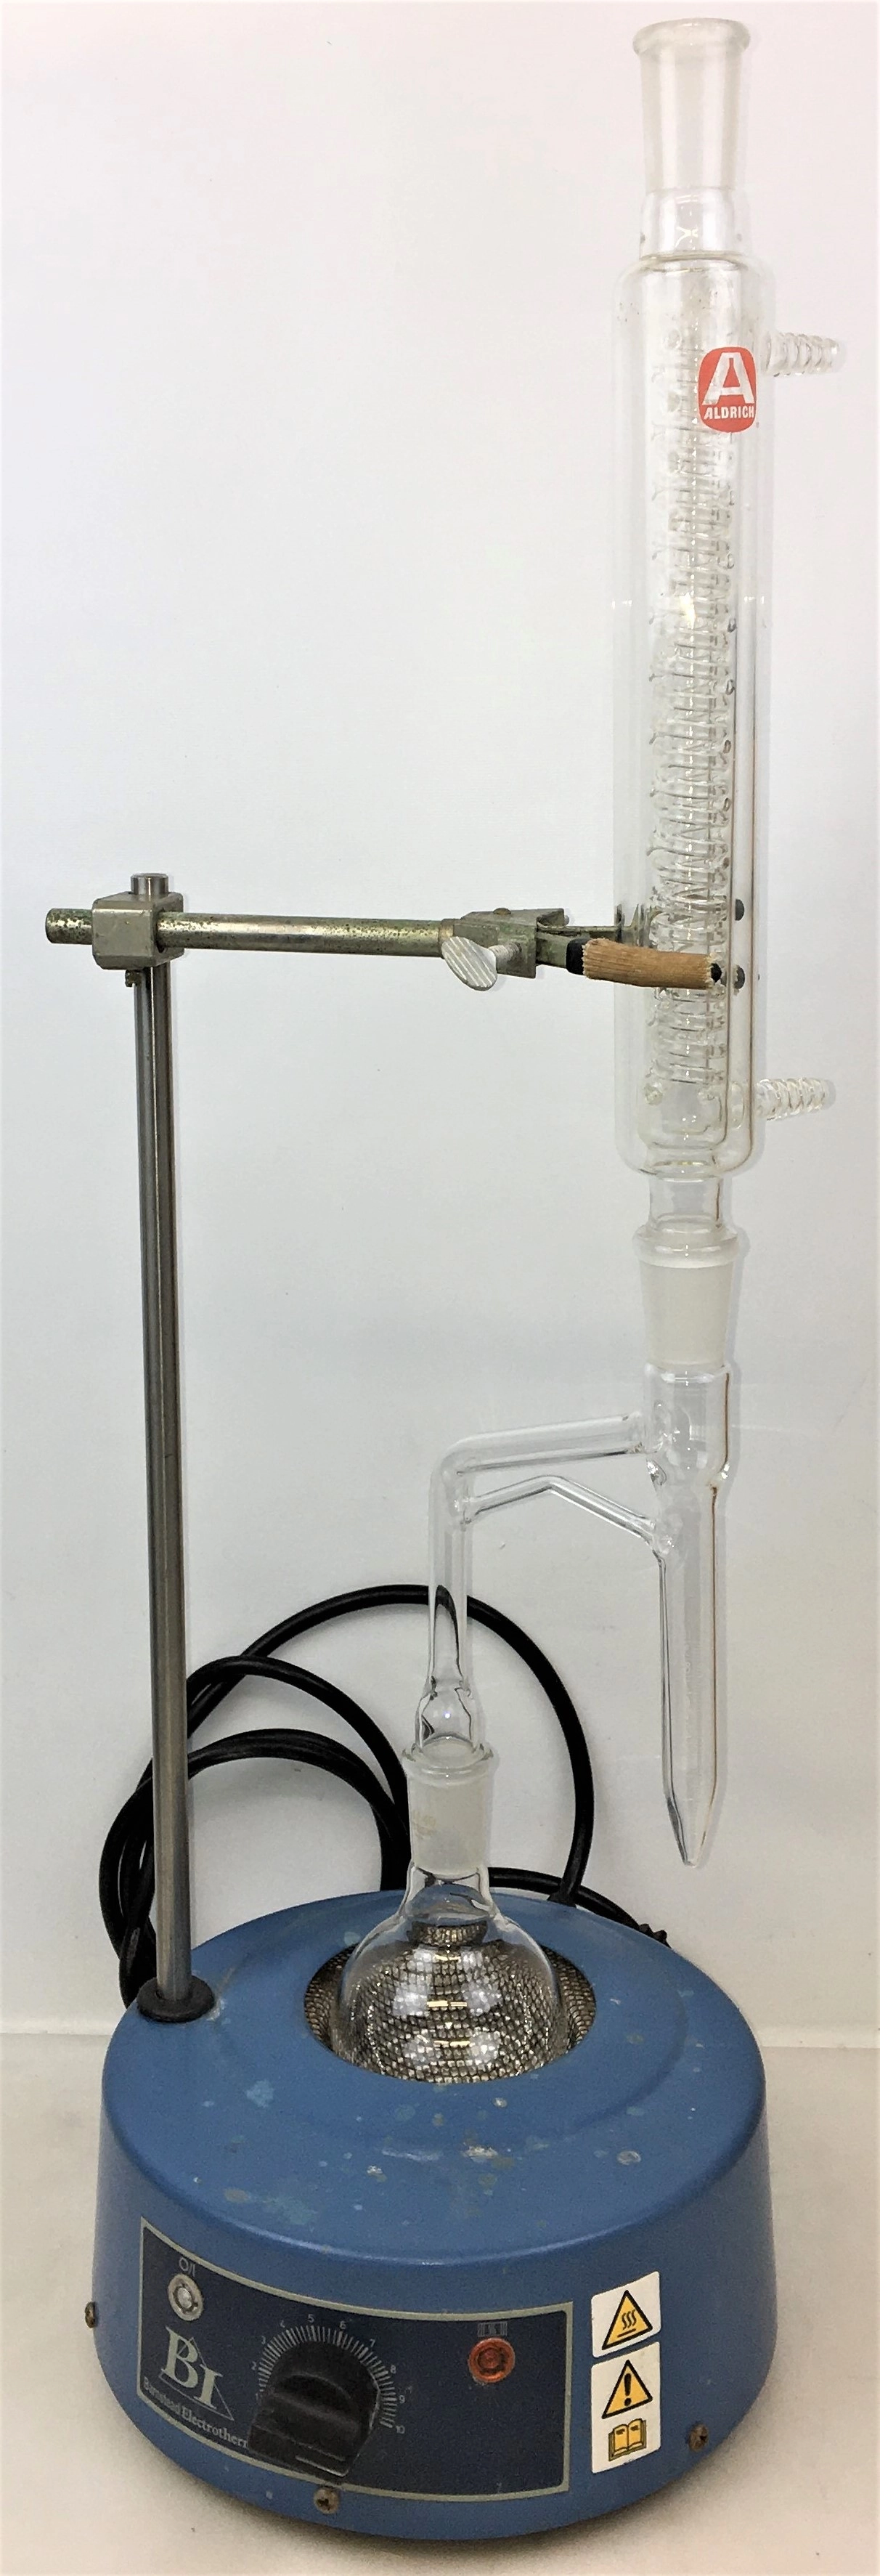 Dean Stark Distillation Apparatus for Water Content Determination (ASTM D95)